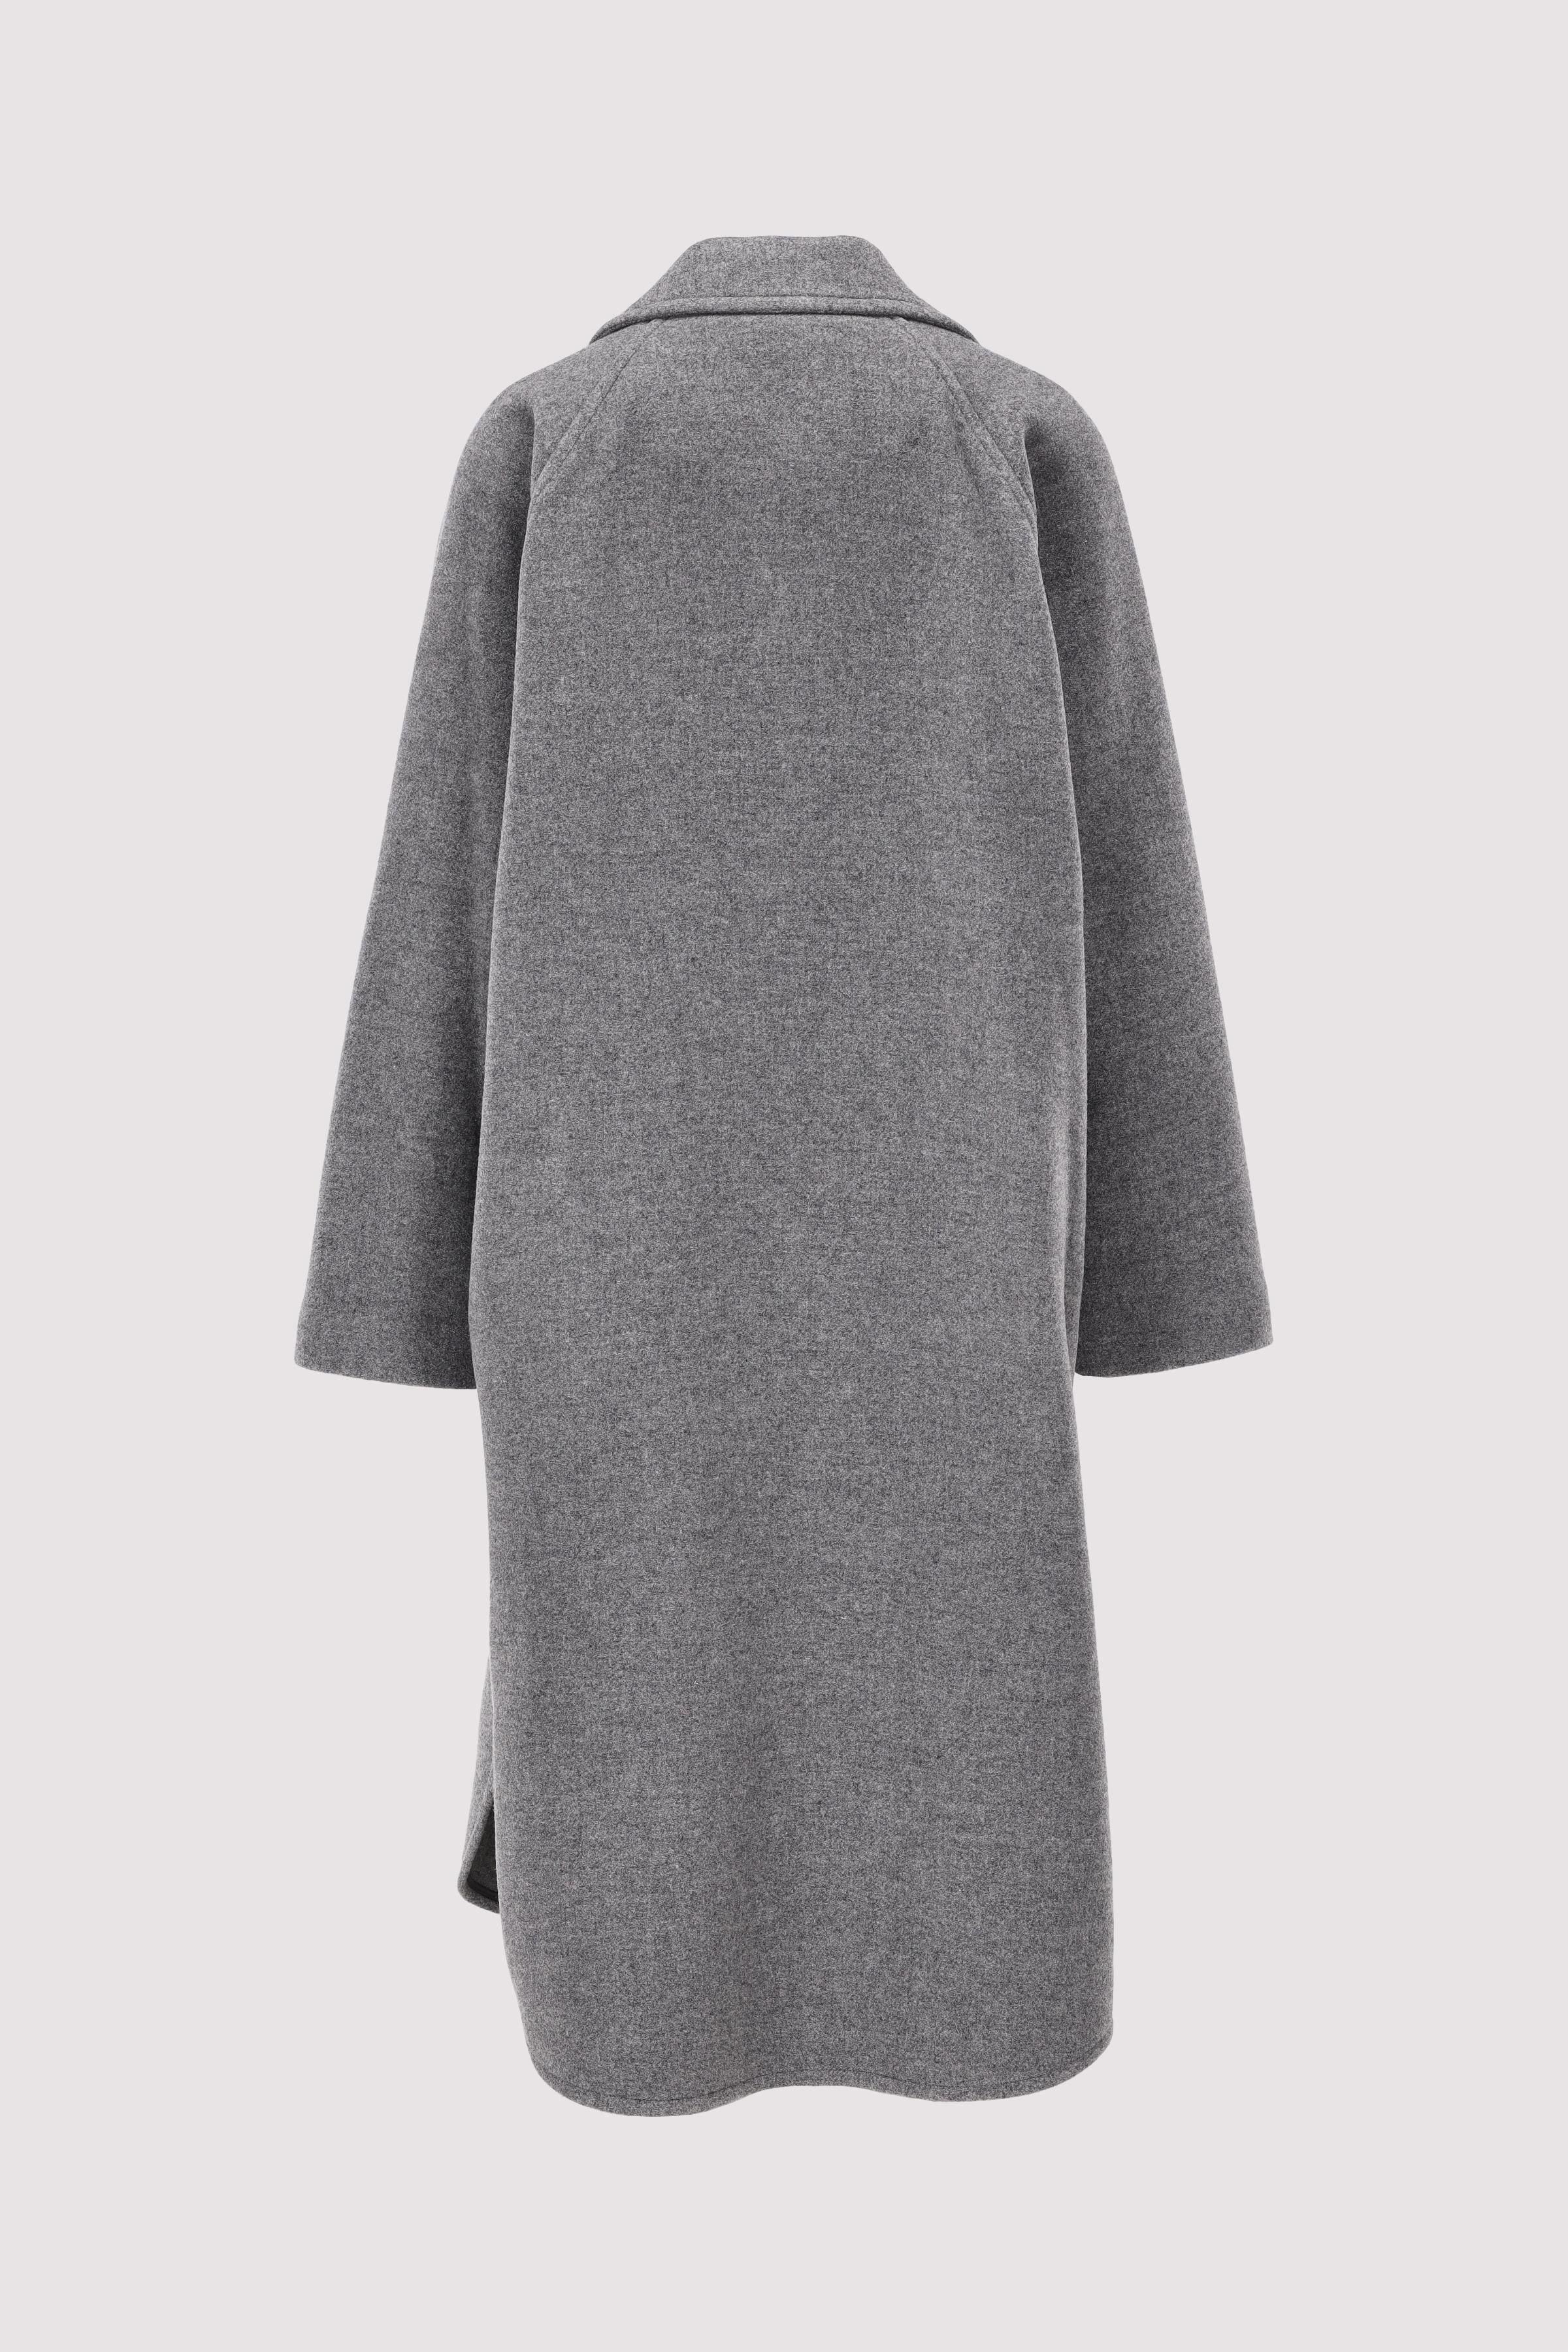 Mélange double wool, cape coat